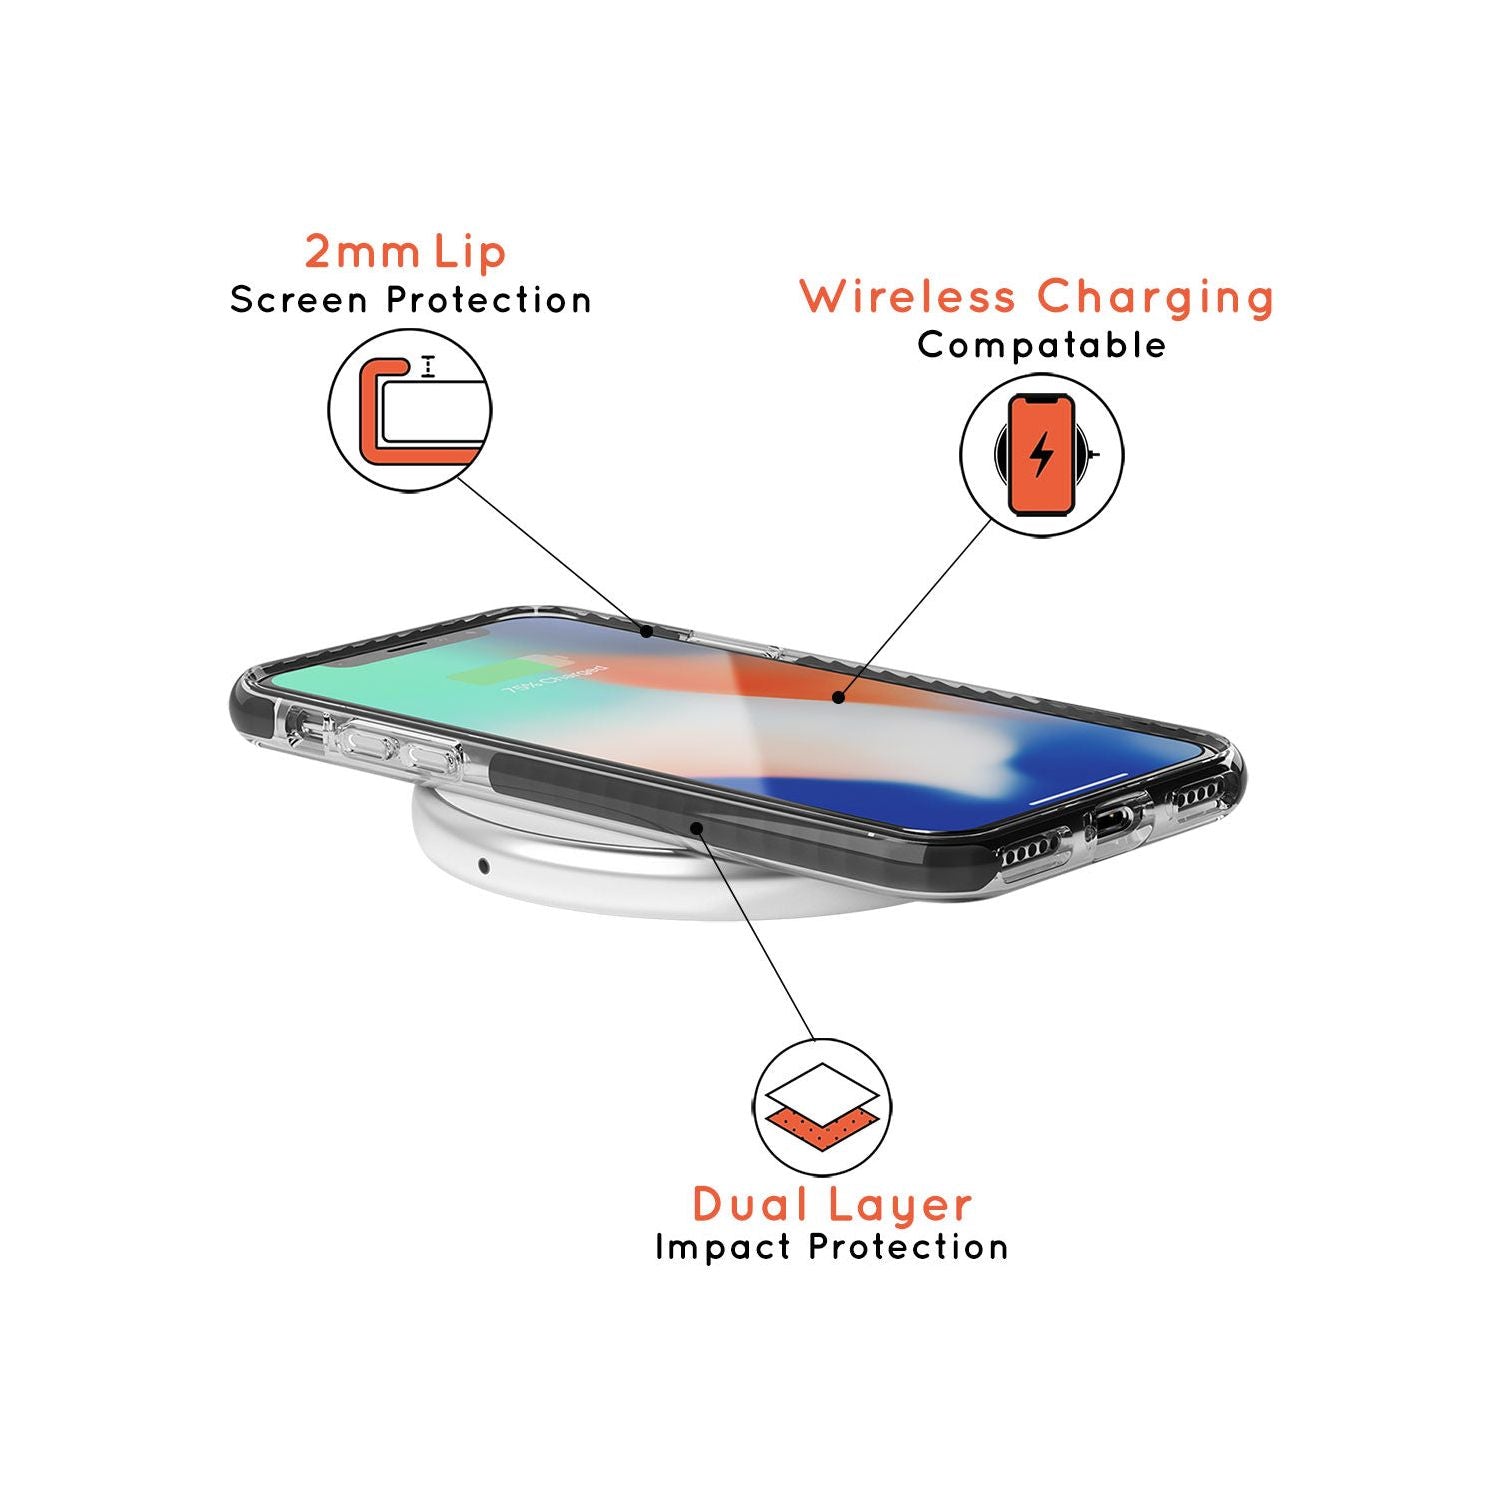 Sagittarius Emblem - Transparent Design Black Impact Phone Case for iPhone SE 8 7 Plus